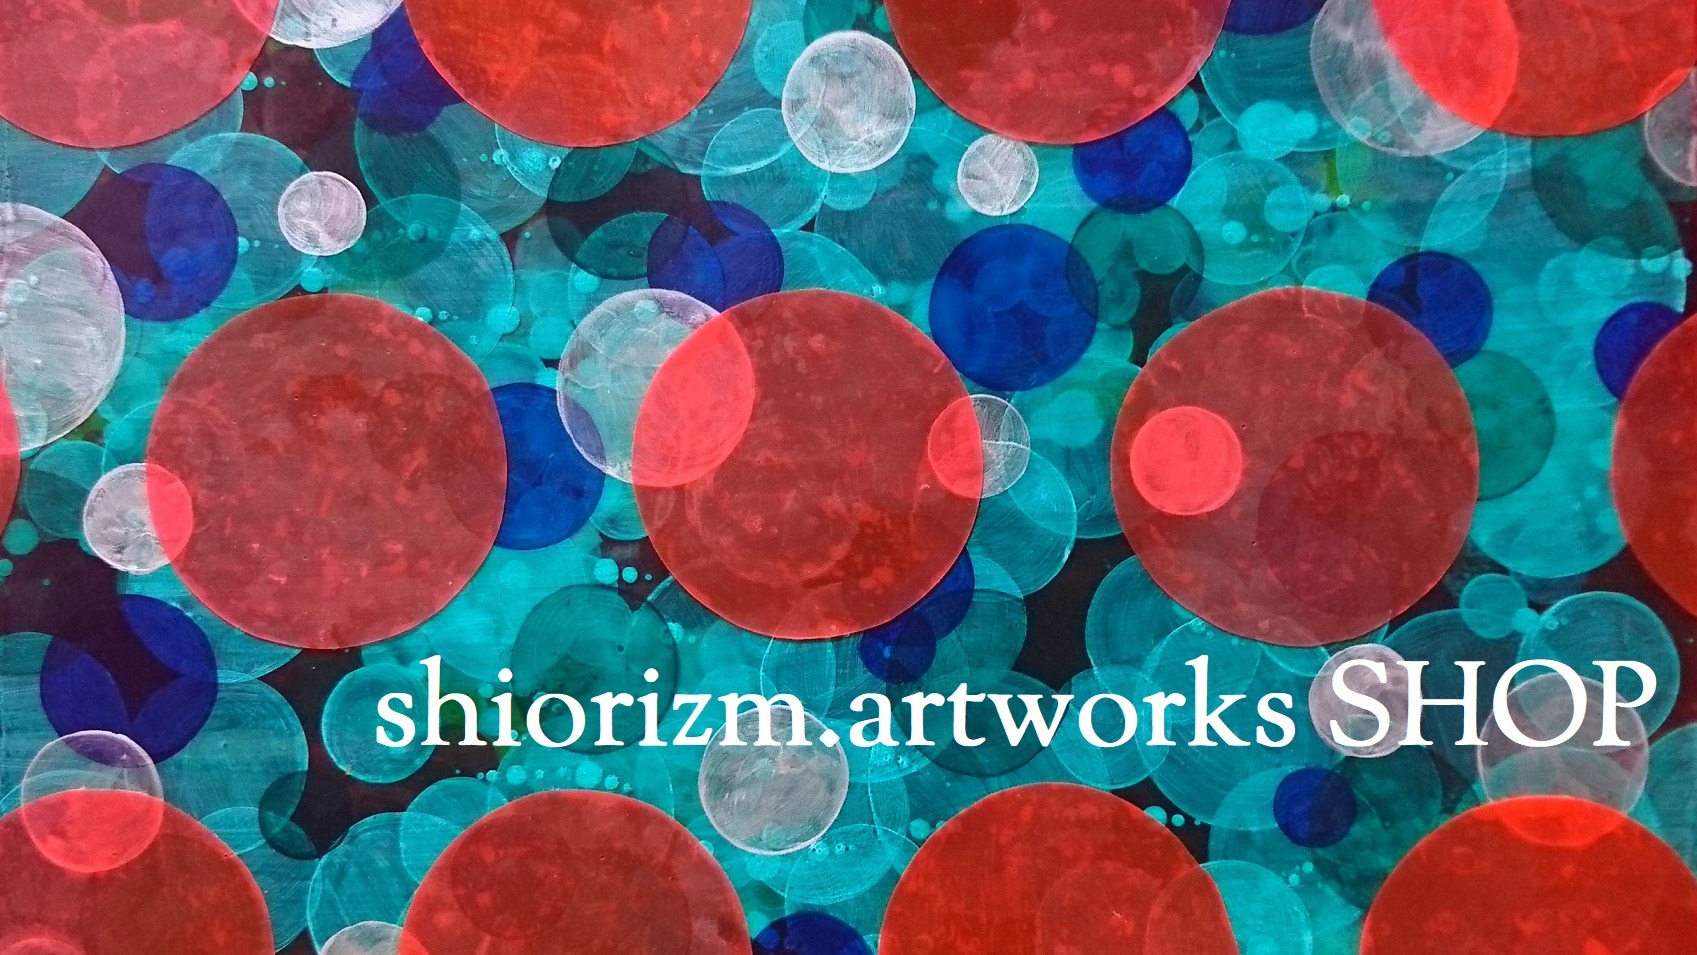 shiorizm.artwork SHOP